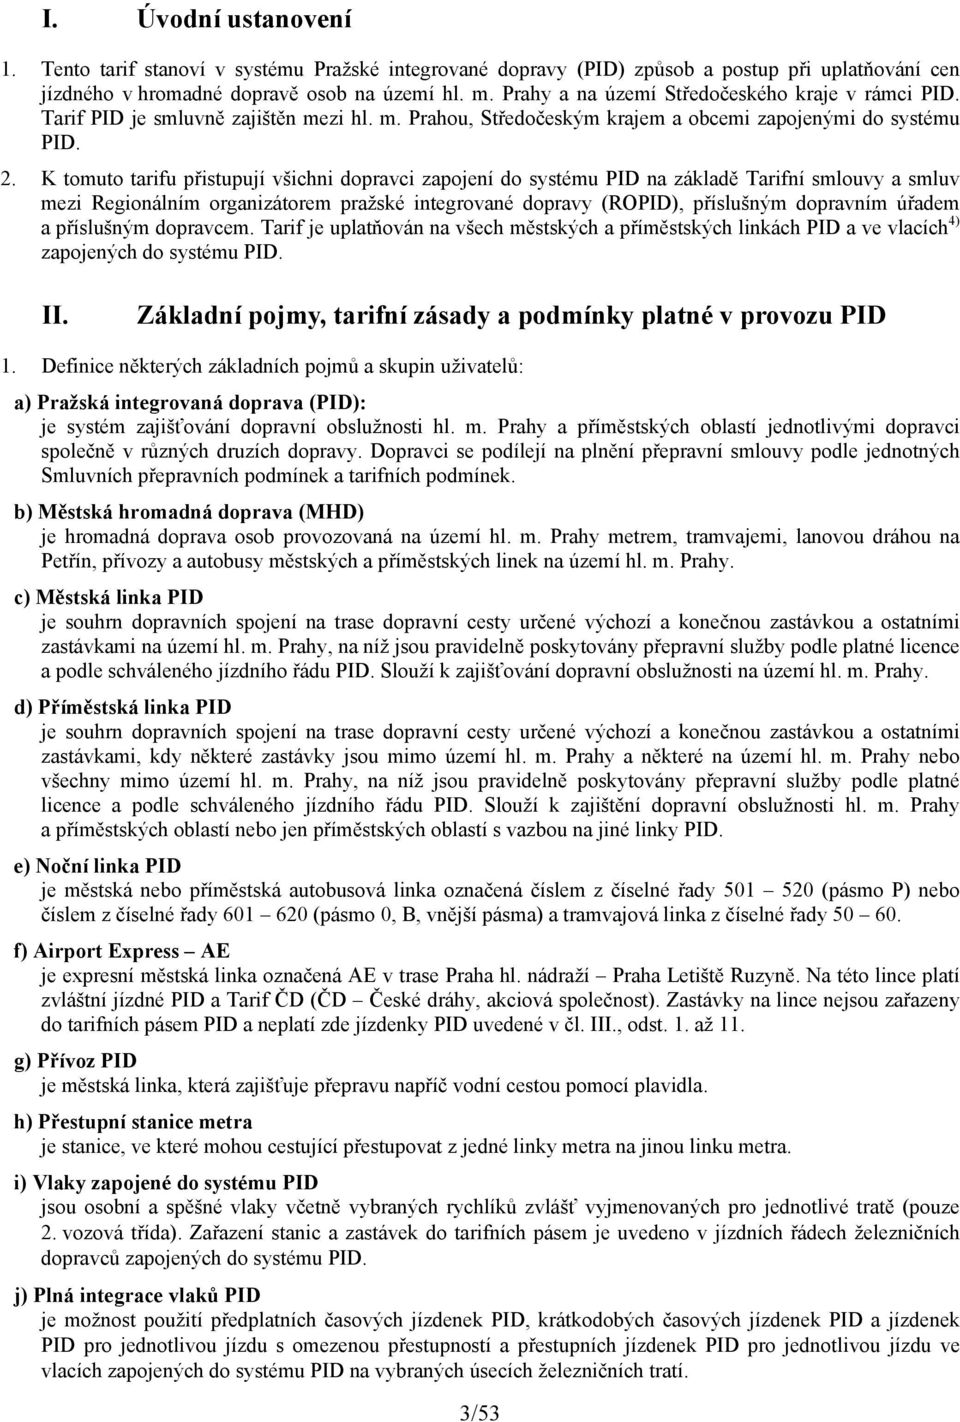 K tomuto tarifu přistupují všichni dopravci zapojení do systému PID na základě Tarifní smlouvy a smluv mezi Regionálním organizátorem pražské integrované dopravy (ROPID), příslušným dopravním úřadem